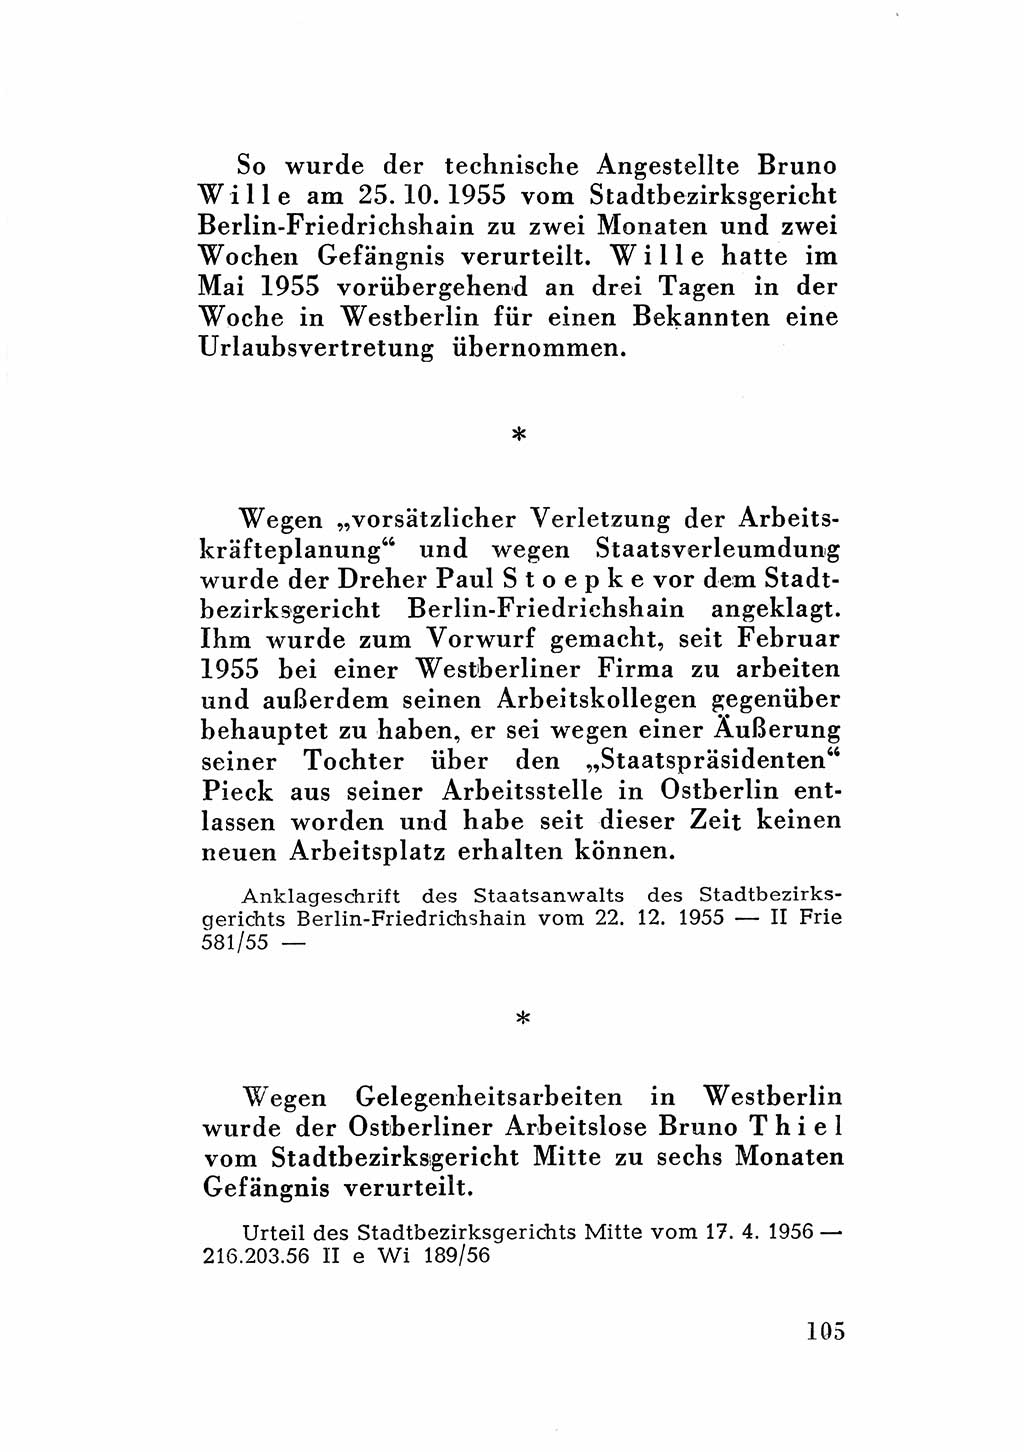 Katalog des Unrechts, Untersuchungsausschuß Freiheitlicher Juristen (UfJ) [Bundesrepublik Deutschland (BRD)] 1956, Seite 105 (Kat. UnR. UfJ BRD 1956, S. 105)